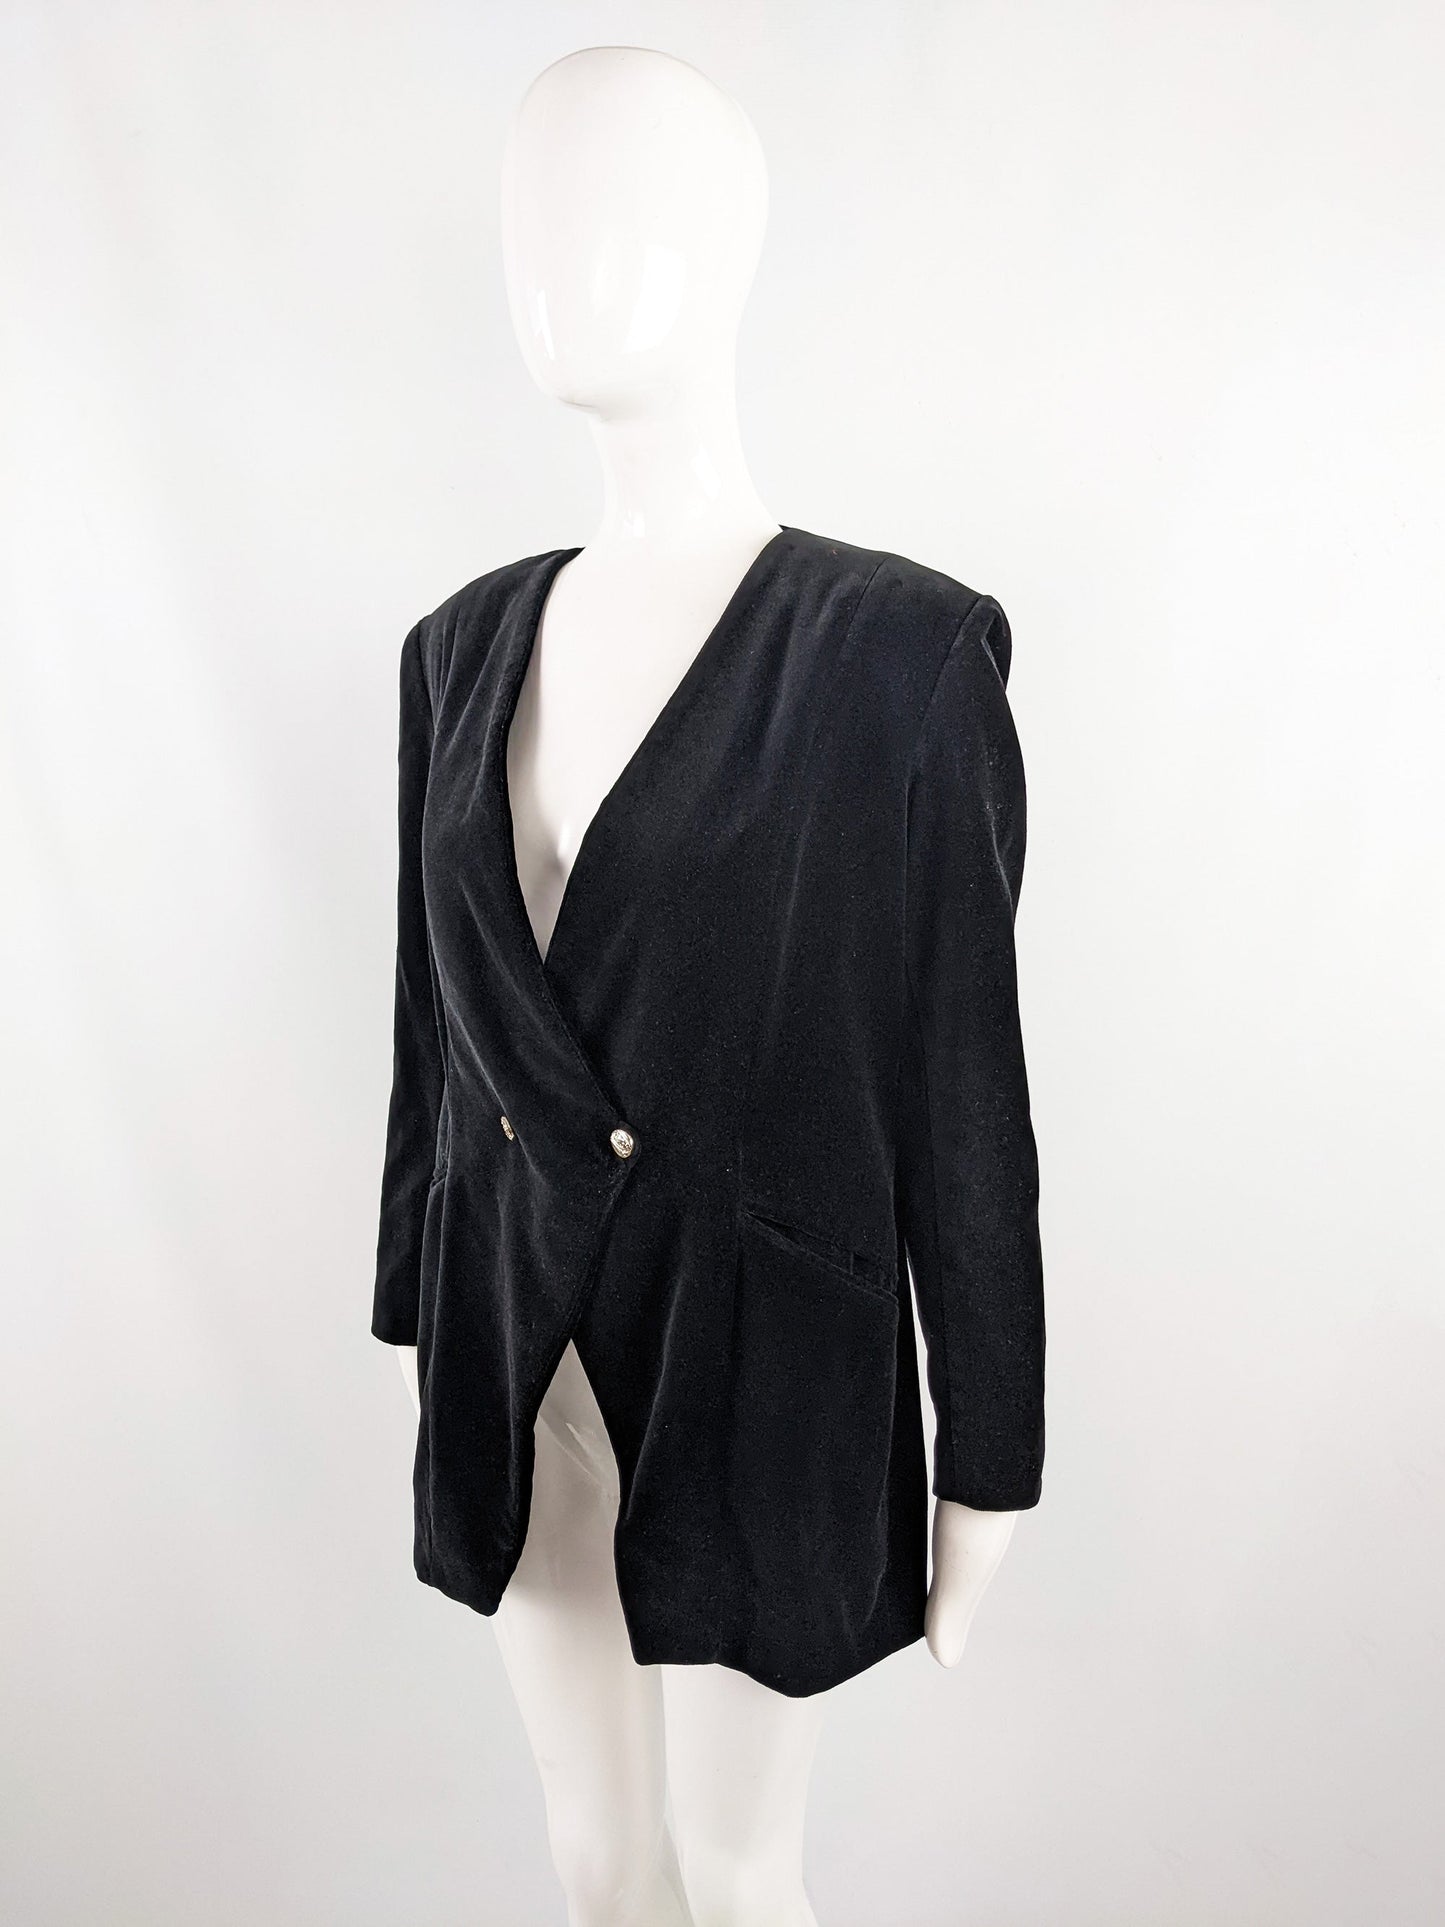 Atos Lombardini Vintage Black Velvet Shoulder Pads Jacket, 1980s